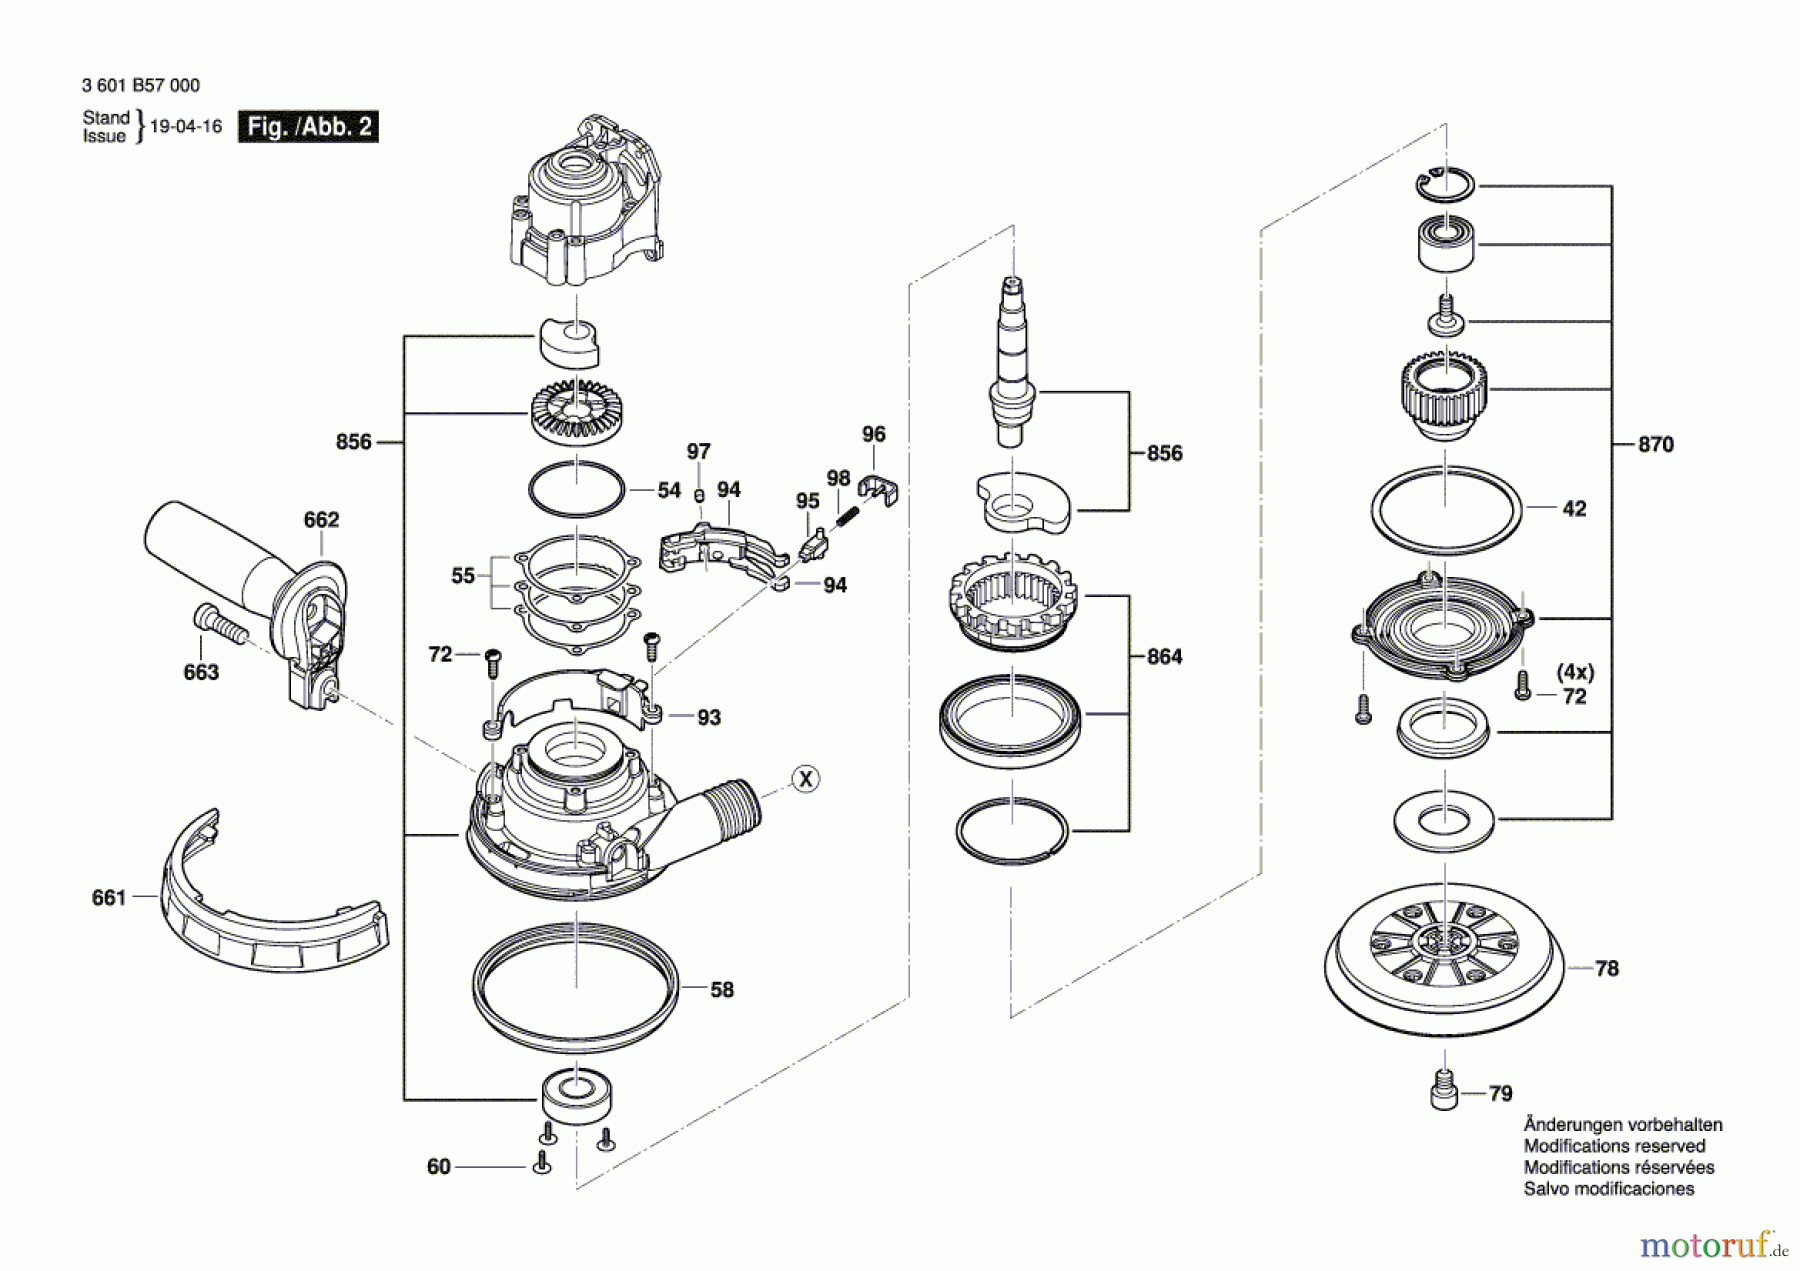  Bosch Werkzeug Exzenterschleifer GET 55-125 Seite 2